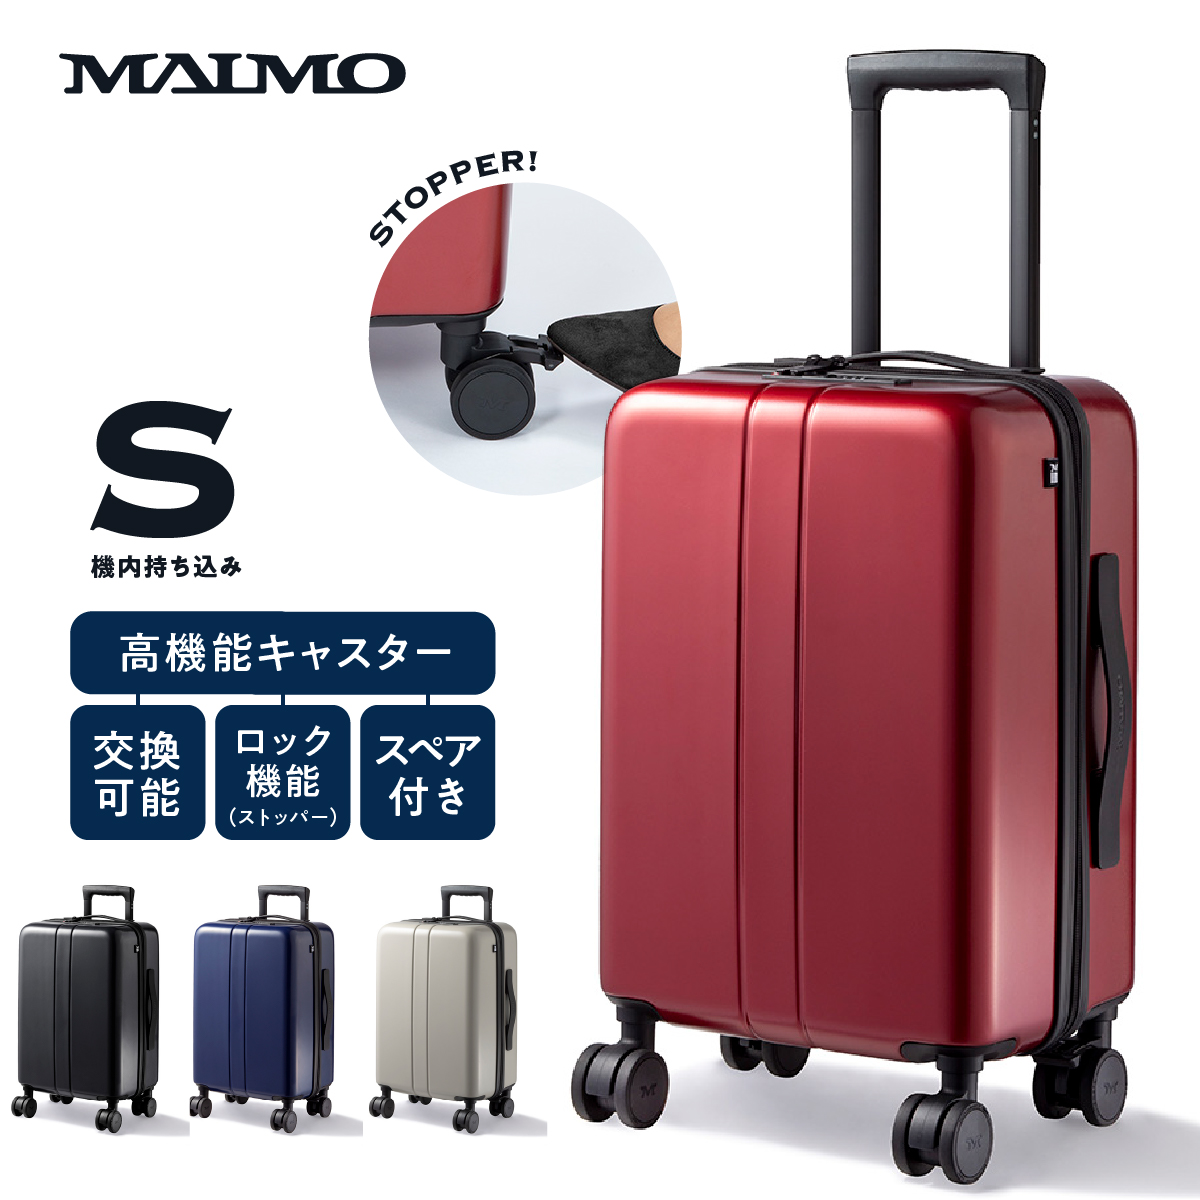 【楽天市場】MAIMO スーツケース Sサイズ Mサイズ Lサイズ 機内